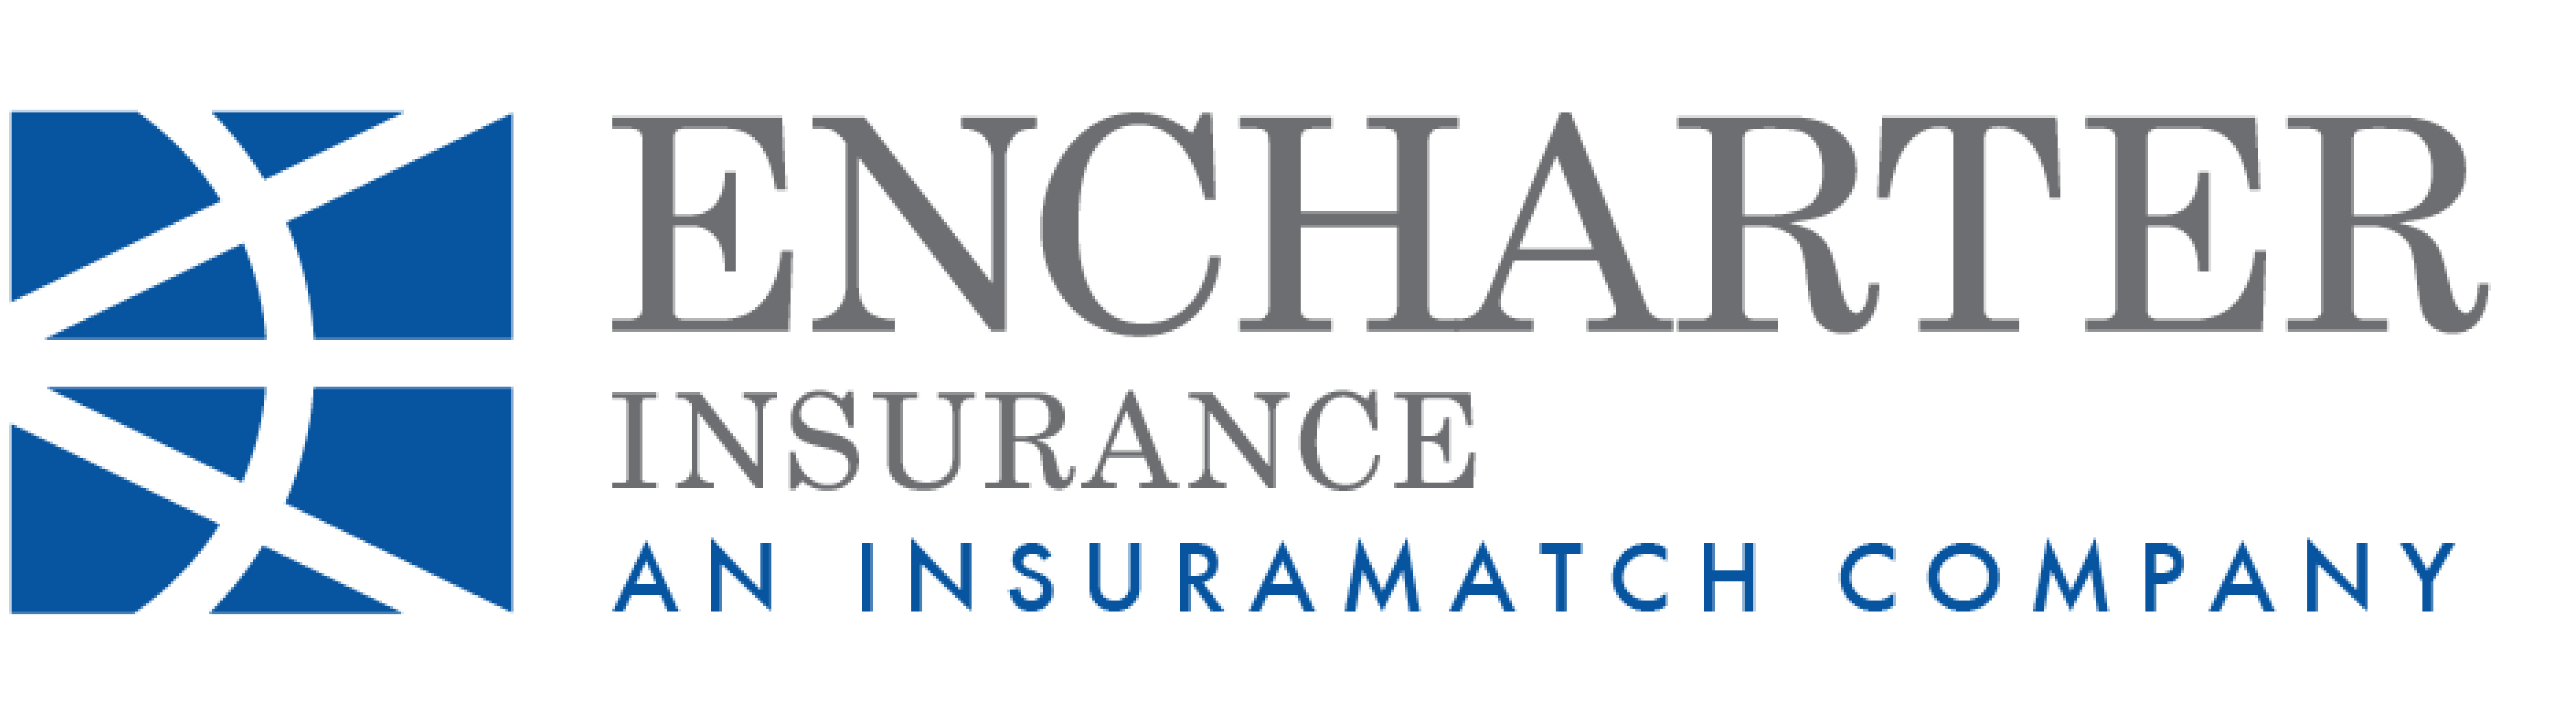 Encharter Insurance logo